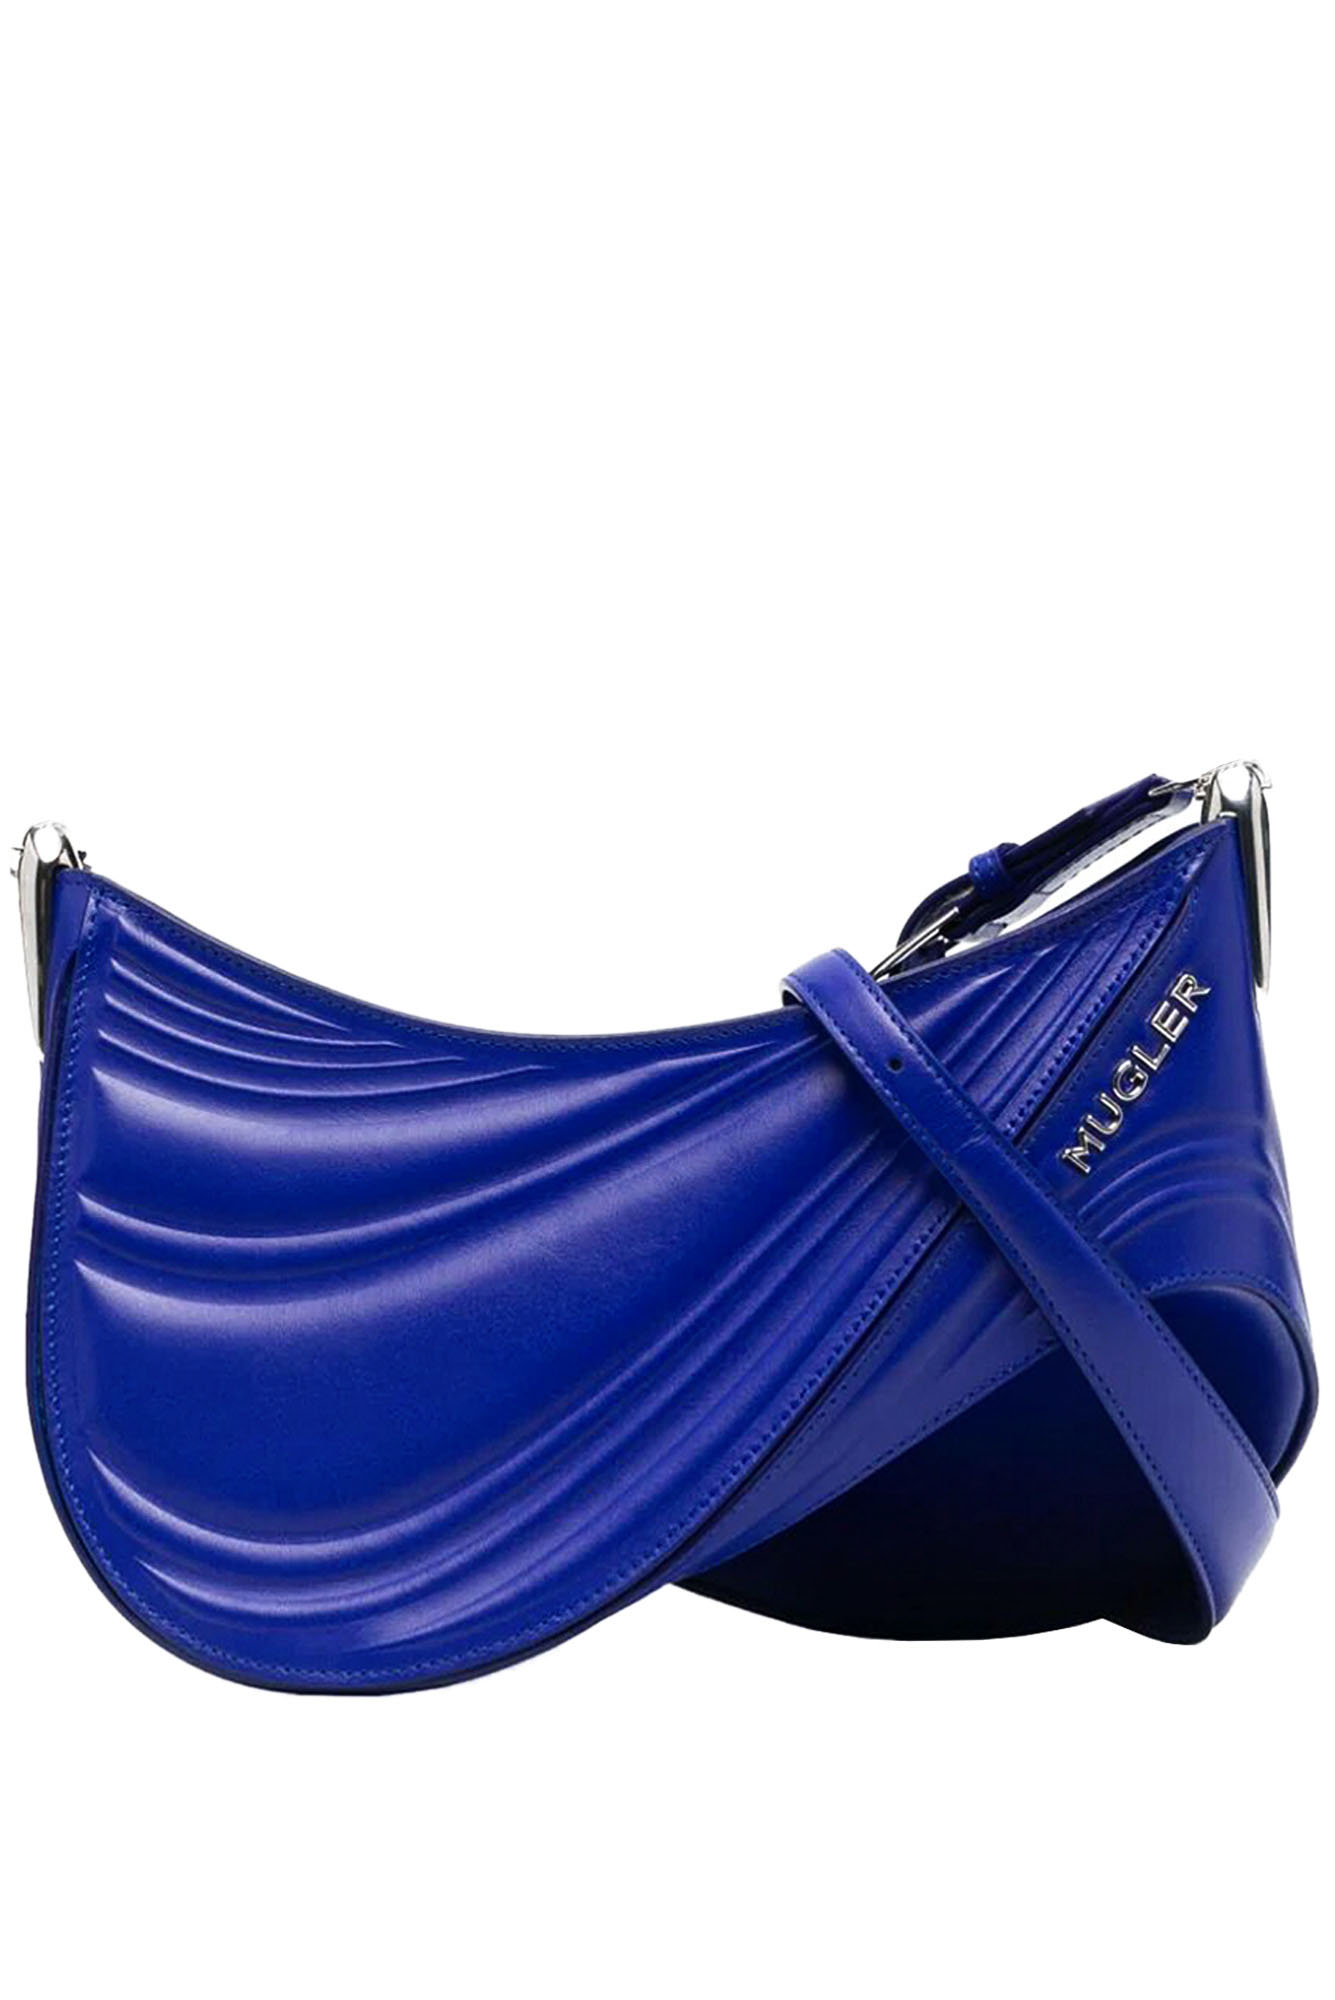 Mugler Large Spiral Shoulder Bag In Blue